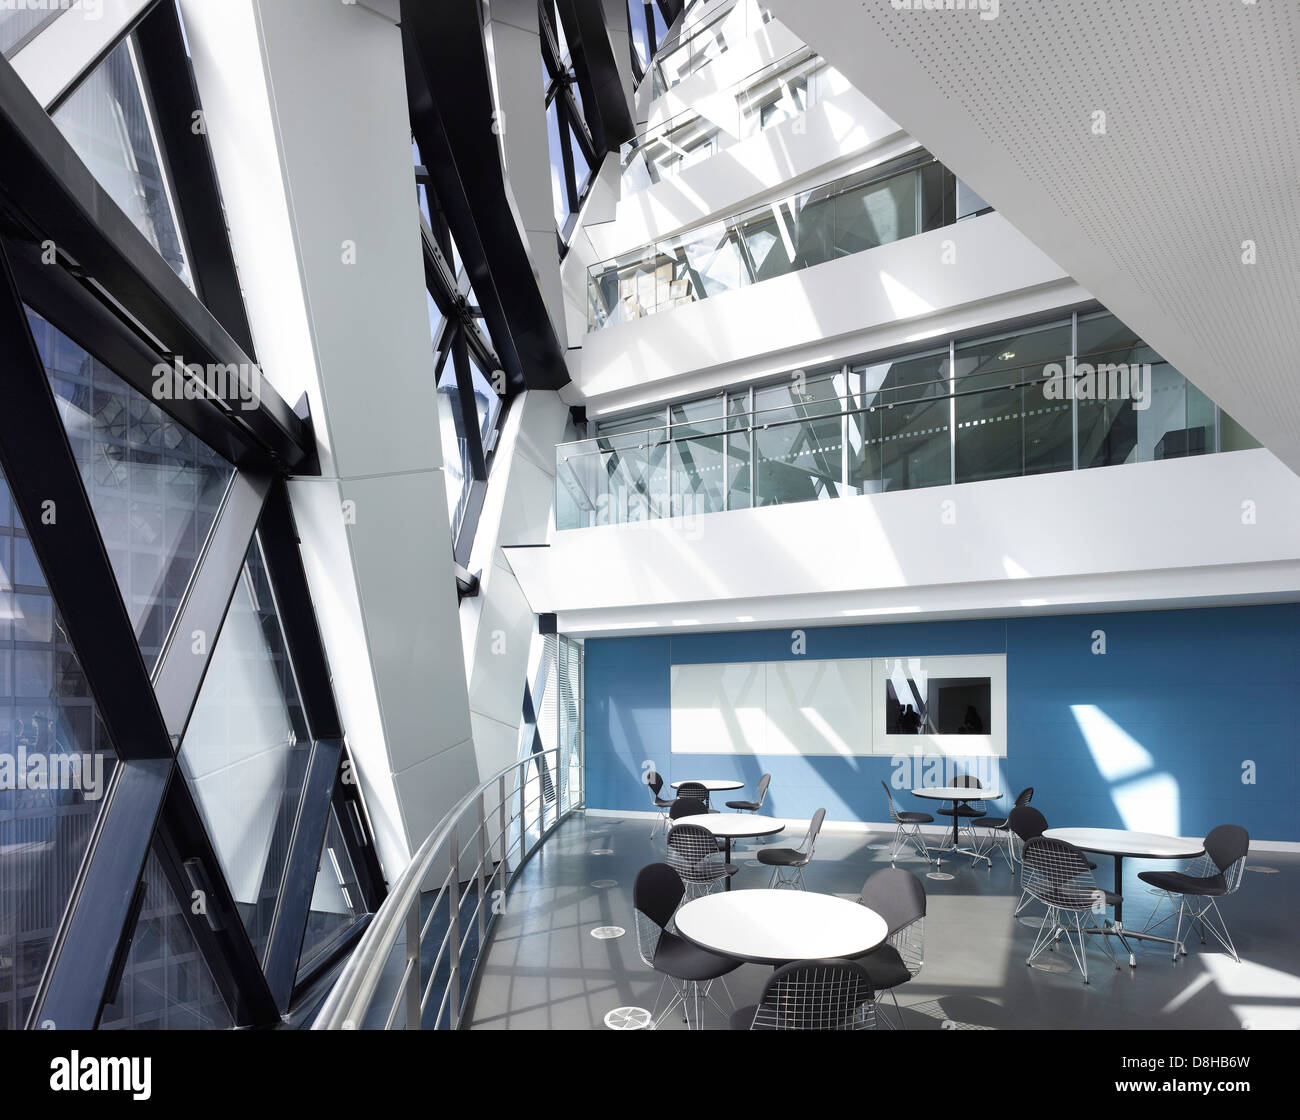 Espace de bureau au 30 St Mary Axe (le cornichon), Londres, Royaume-Uni. Architecte : Michael O'Sullivan, 2012. Vue de l'atrium br Banque D'Images